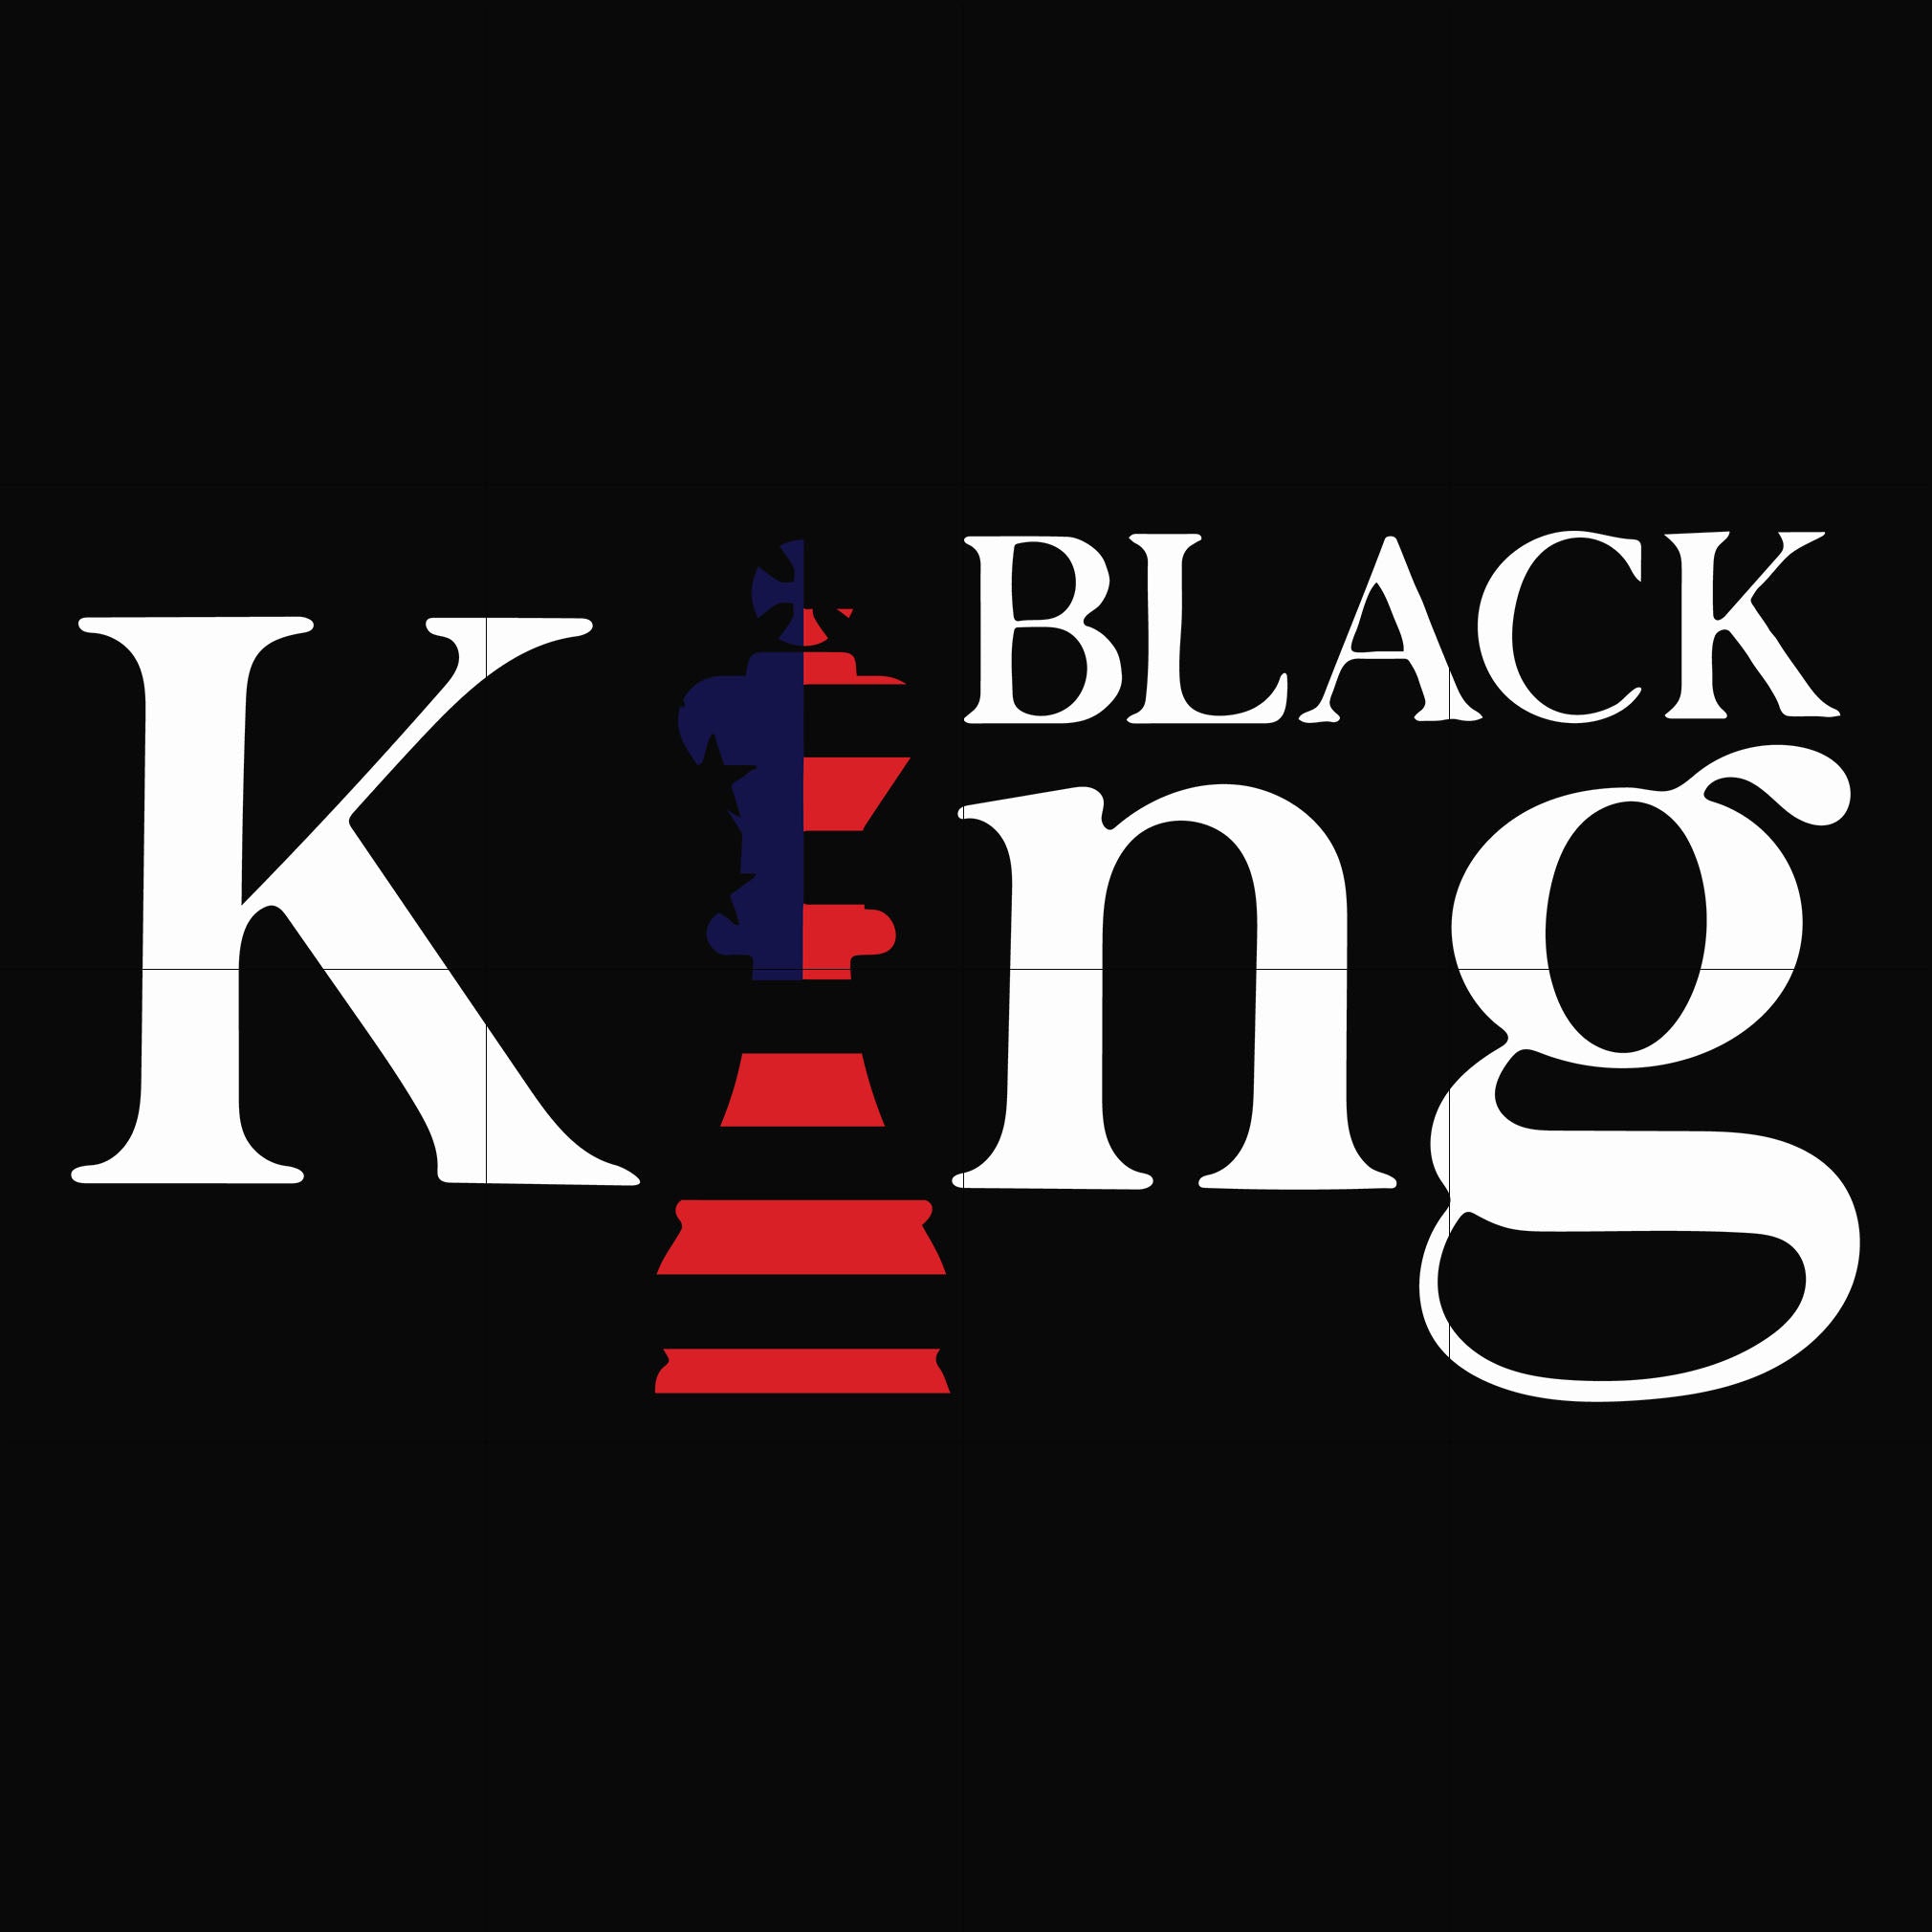 black king chess svg, png, dxf, eps digital file TD99